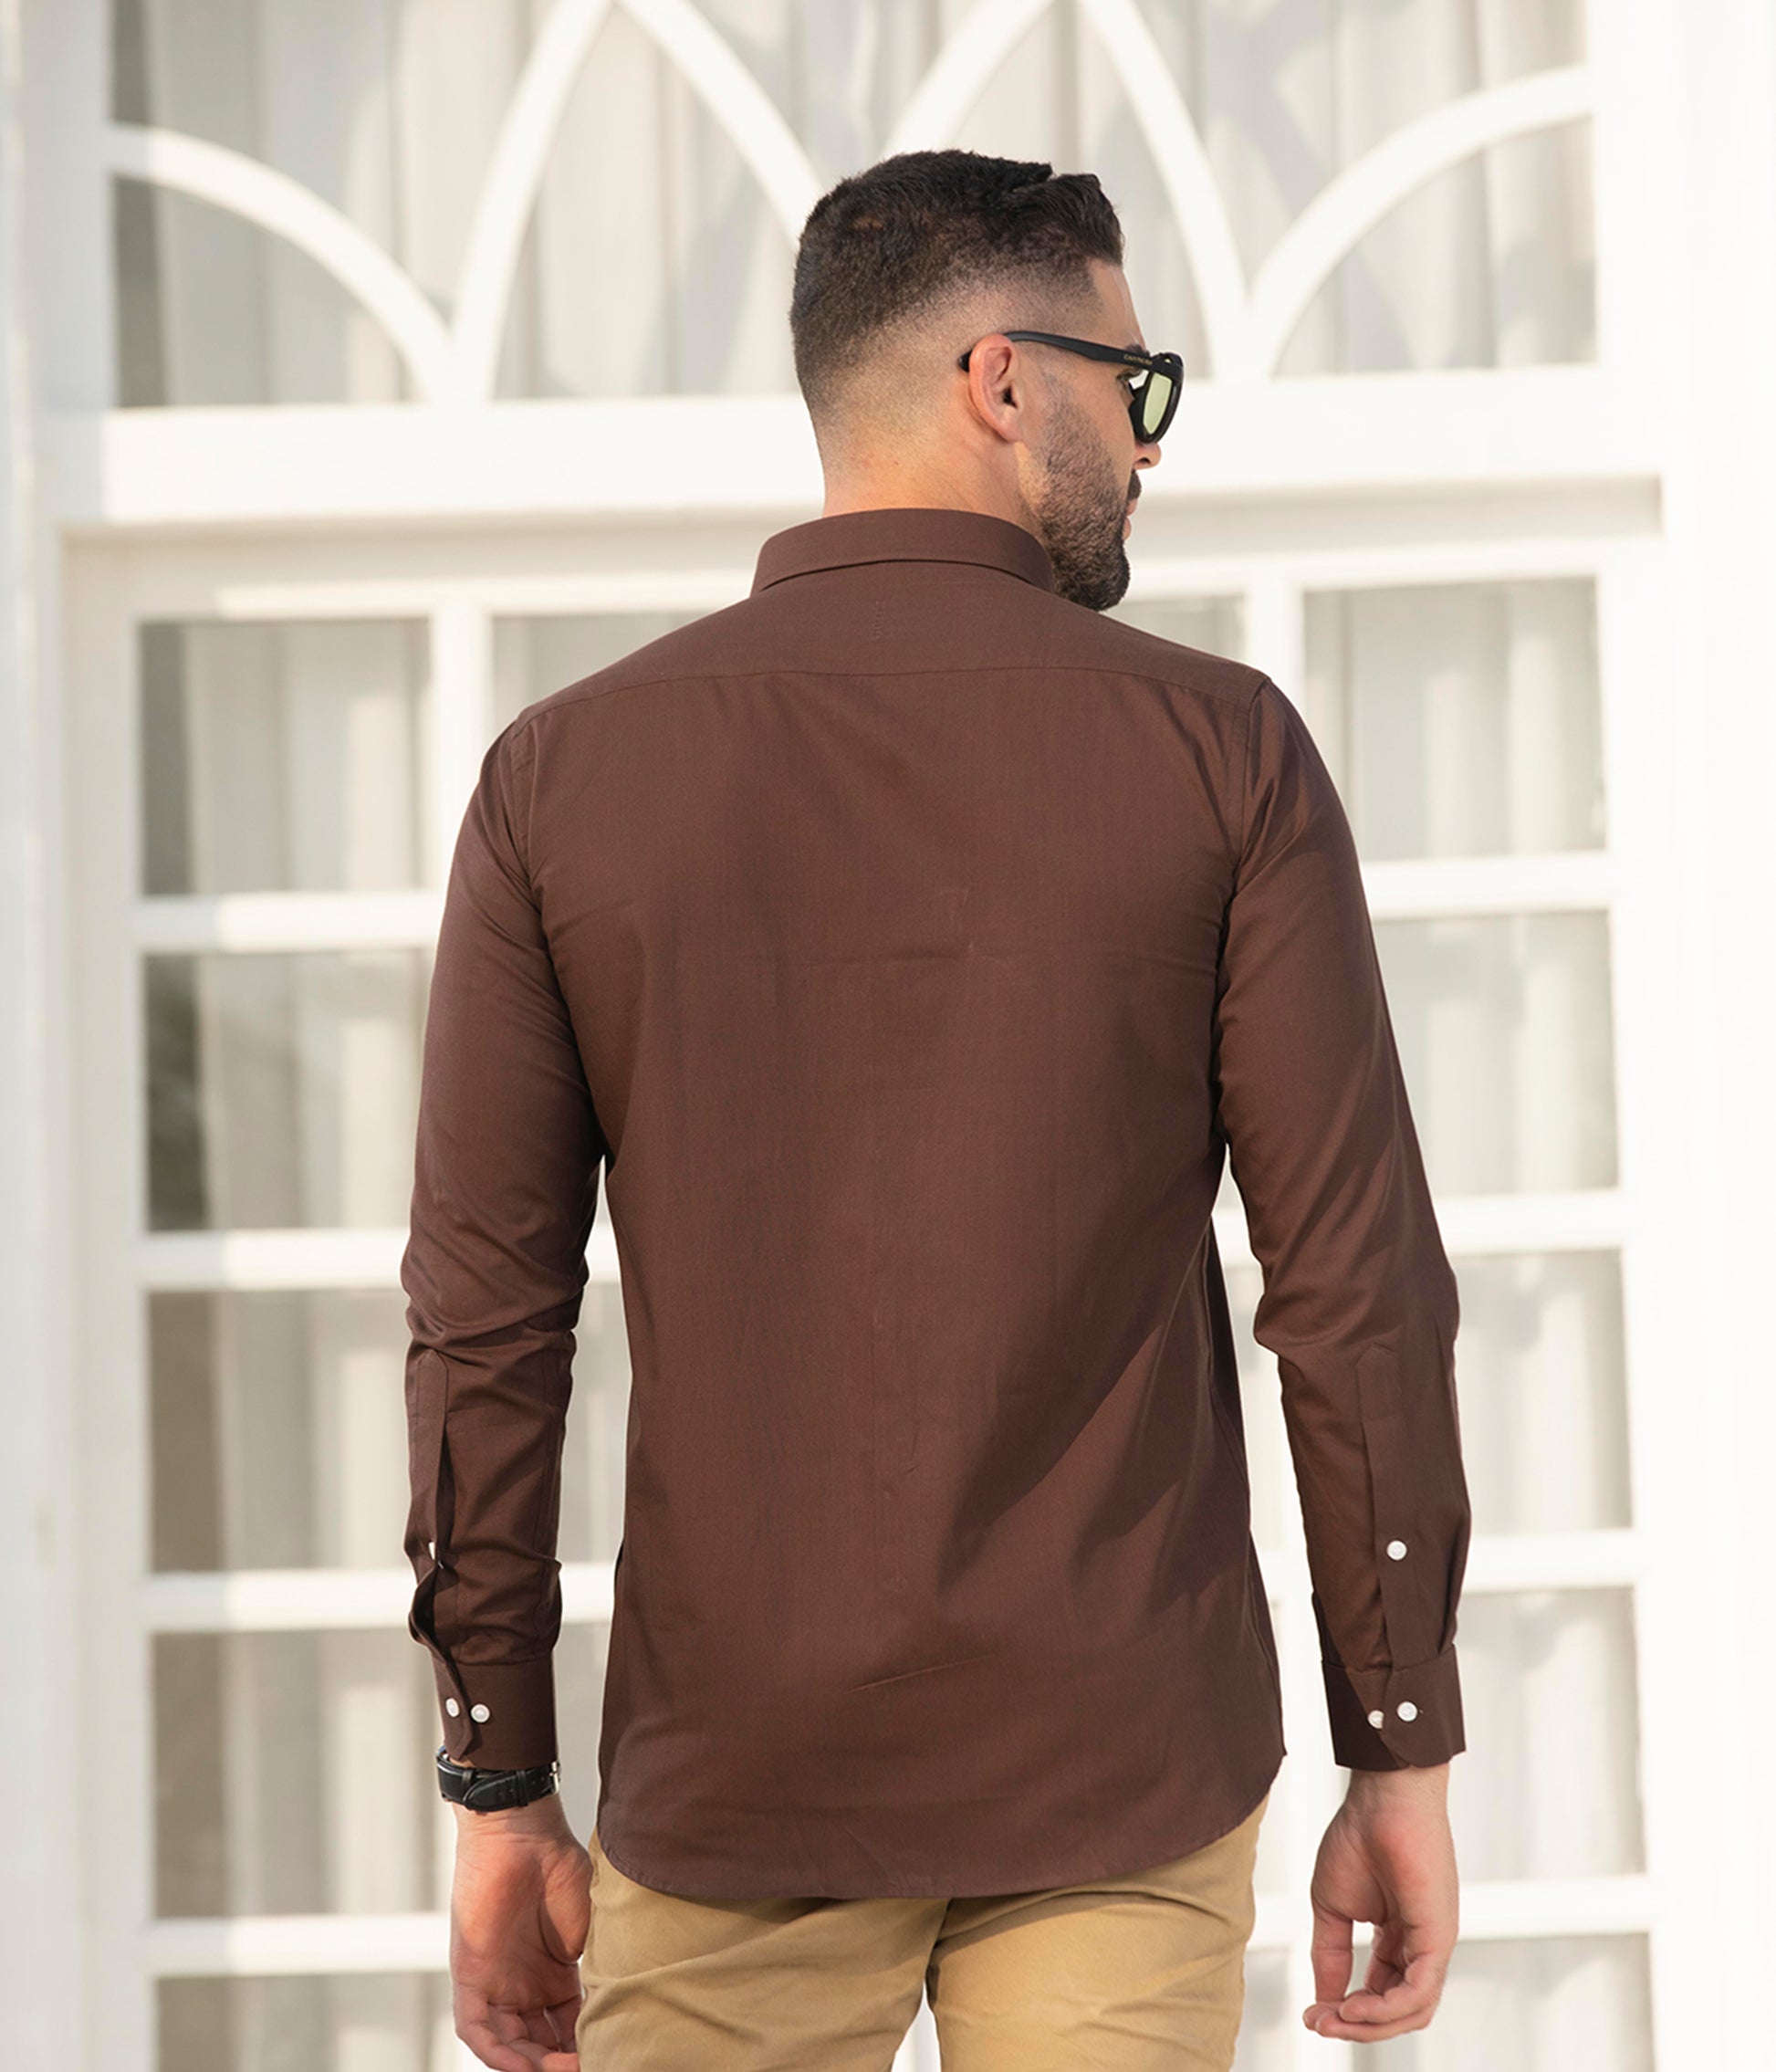 Plain walnut brown color cotton shirt